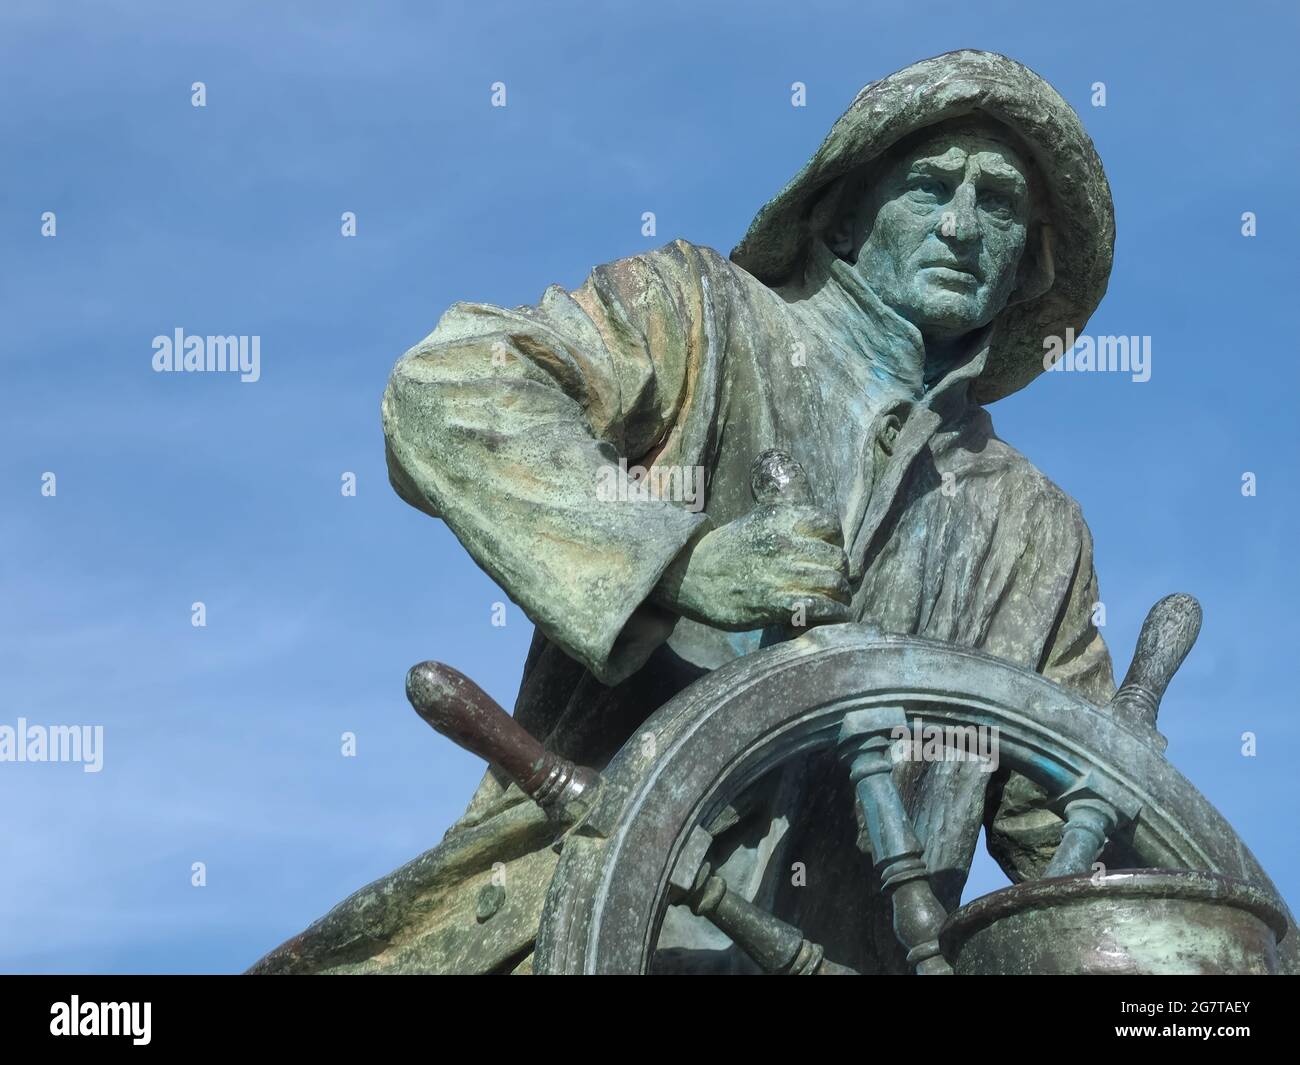 Statue en bronze d'un marin avec une roue Banque D'Images